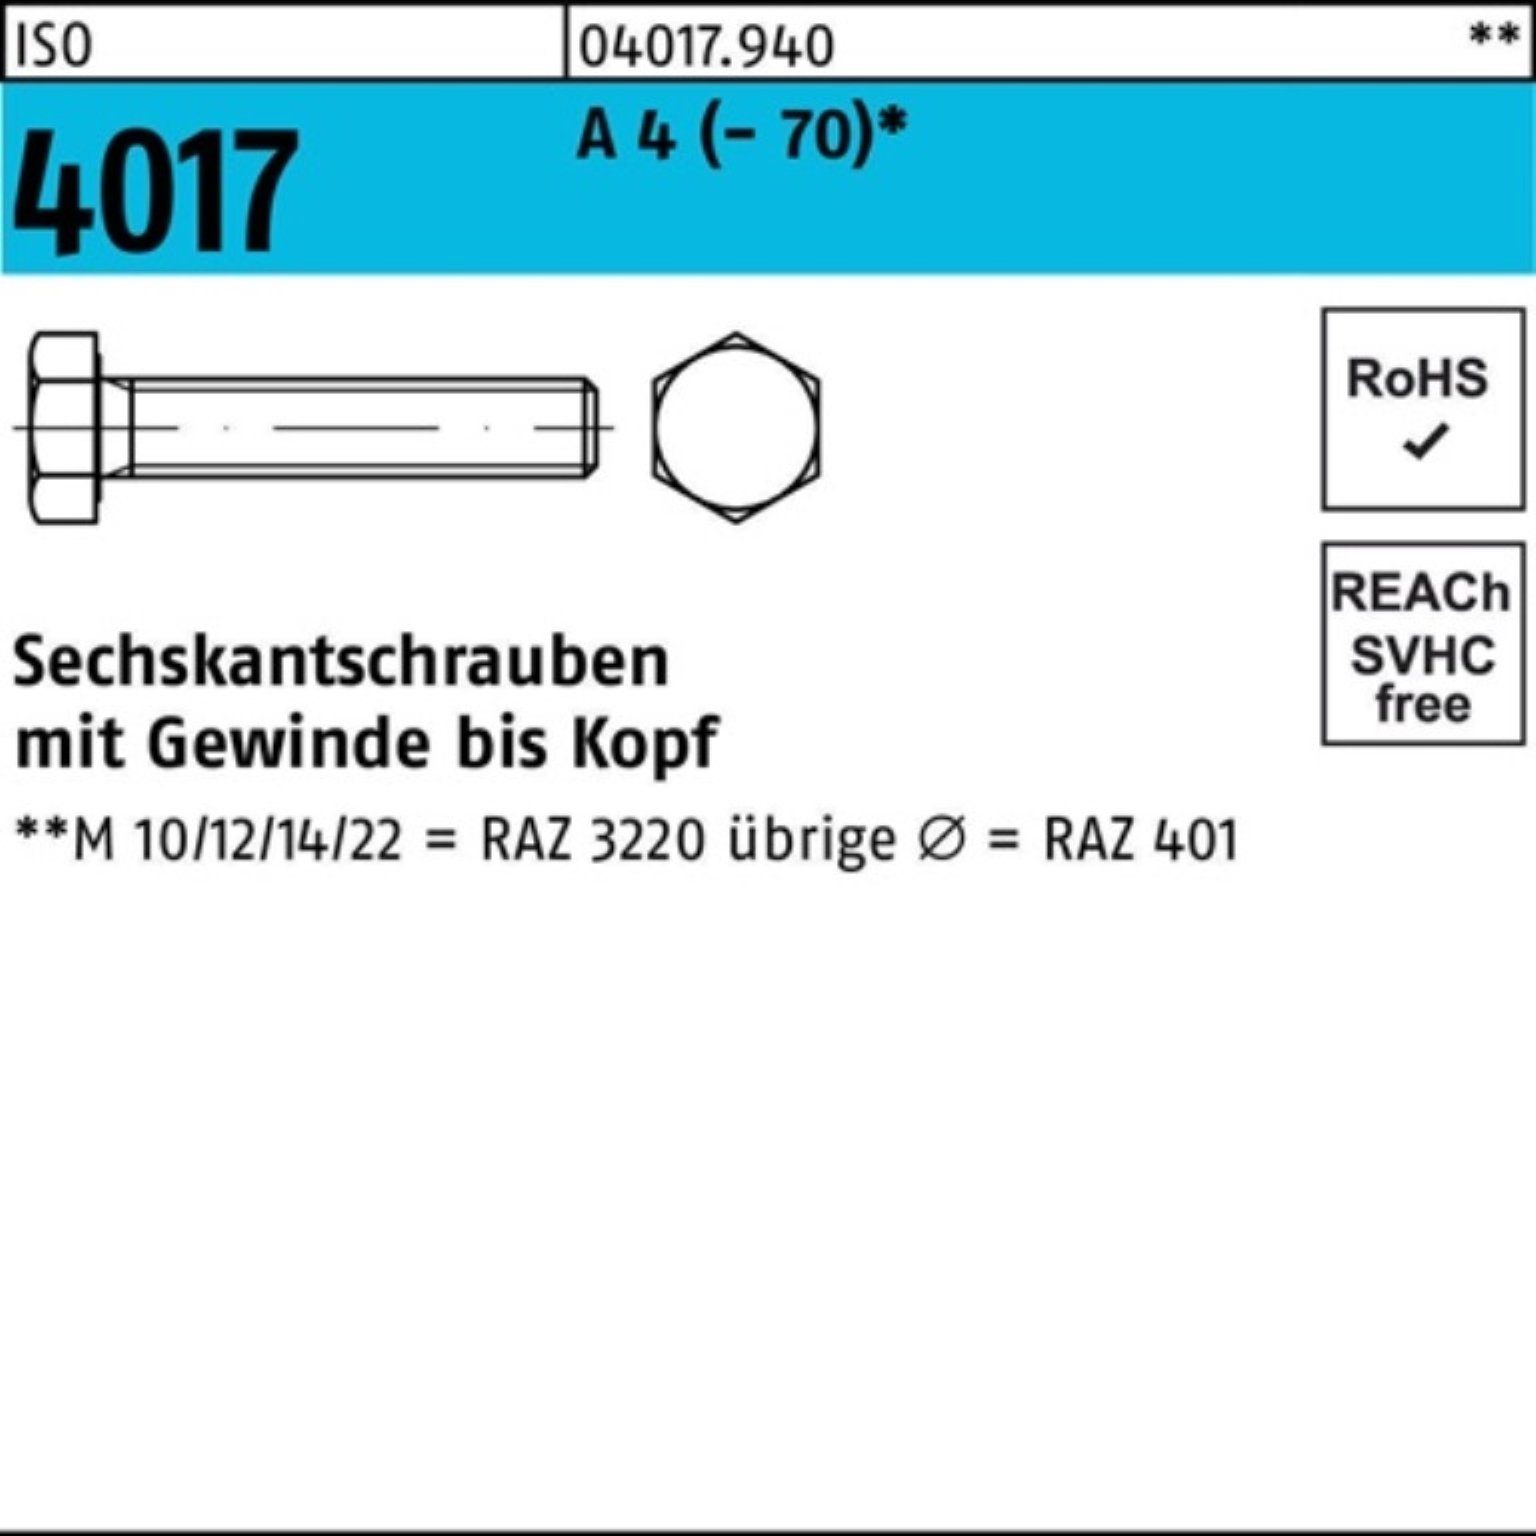 Bufab Sechskantschraube 100er VG (70) Sechskantschraube Pack 4017 ISO A 4 M24x 1 70 I Stück